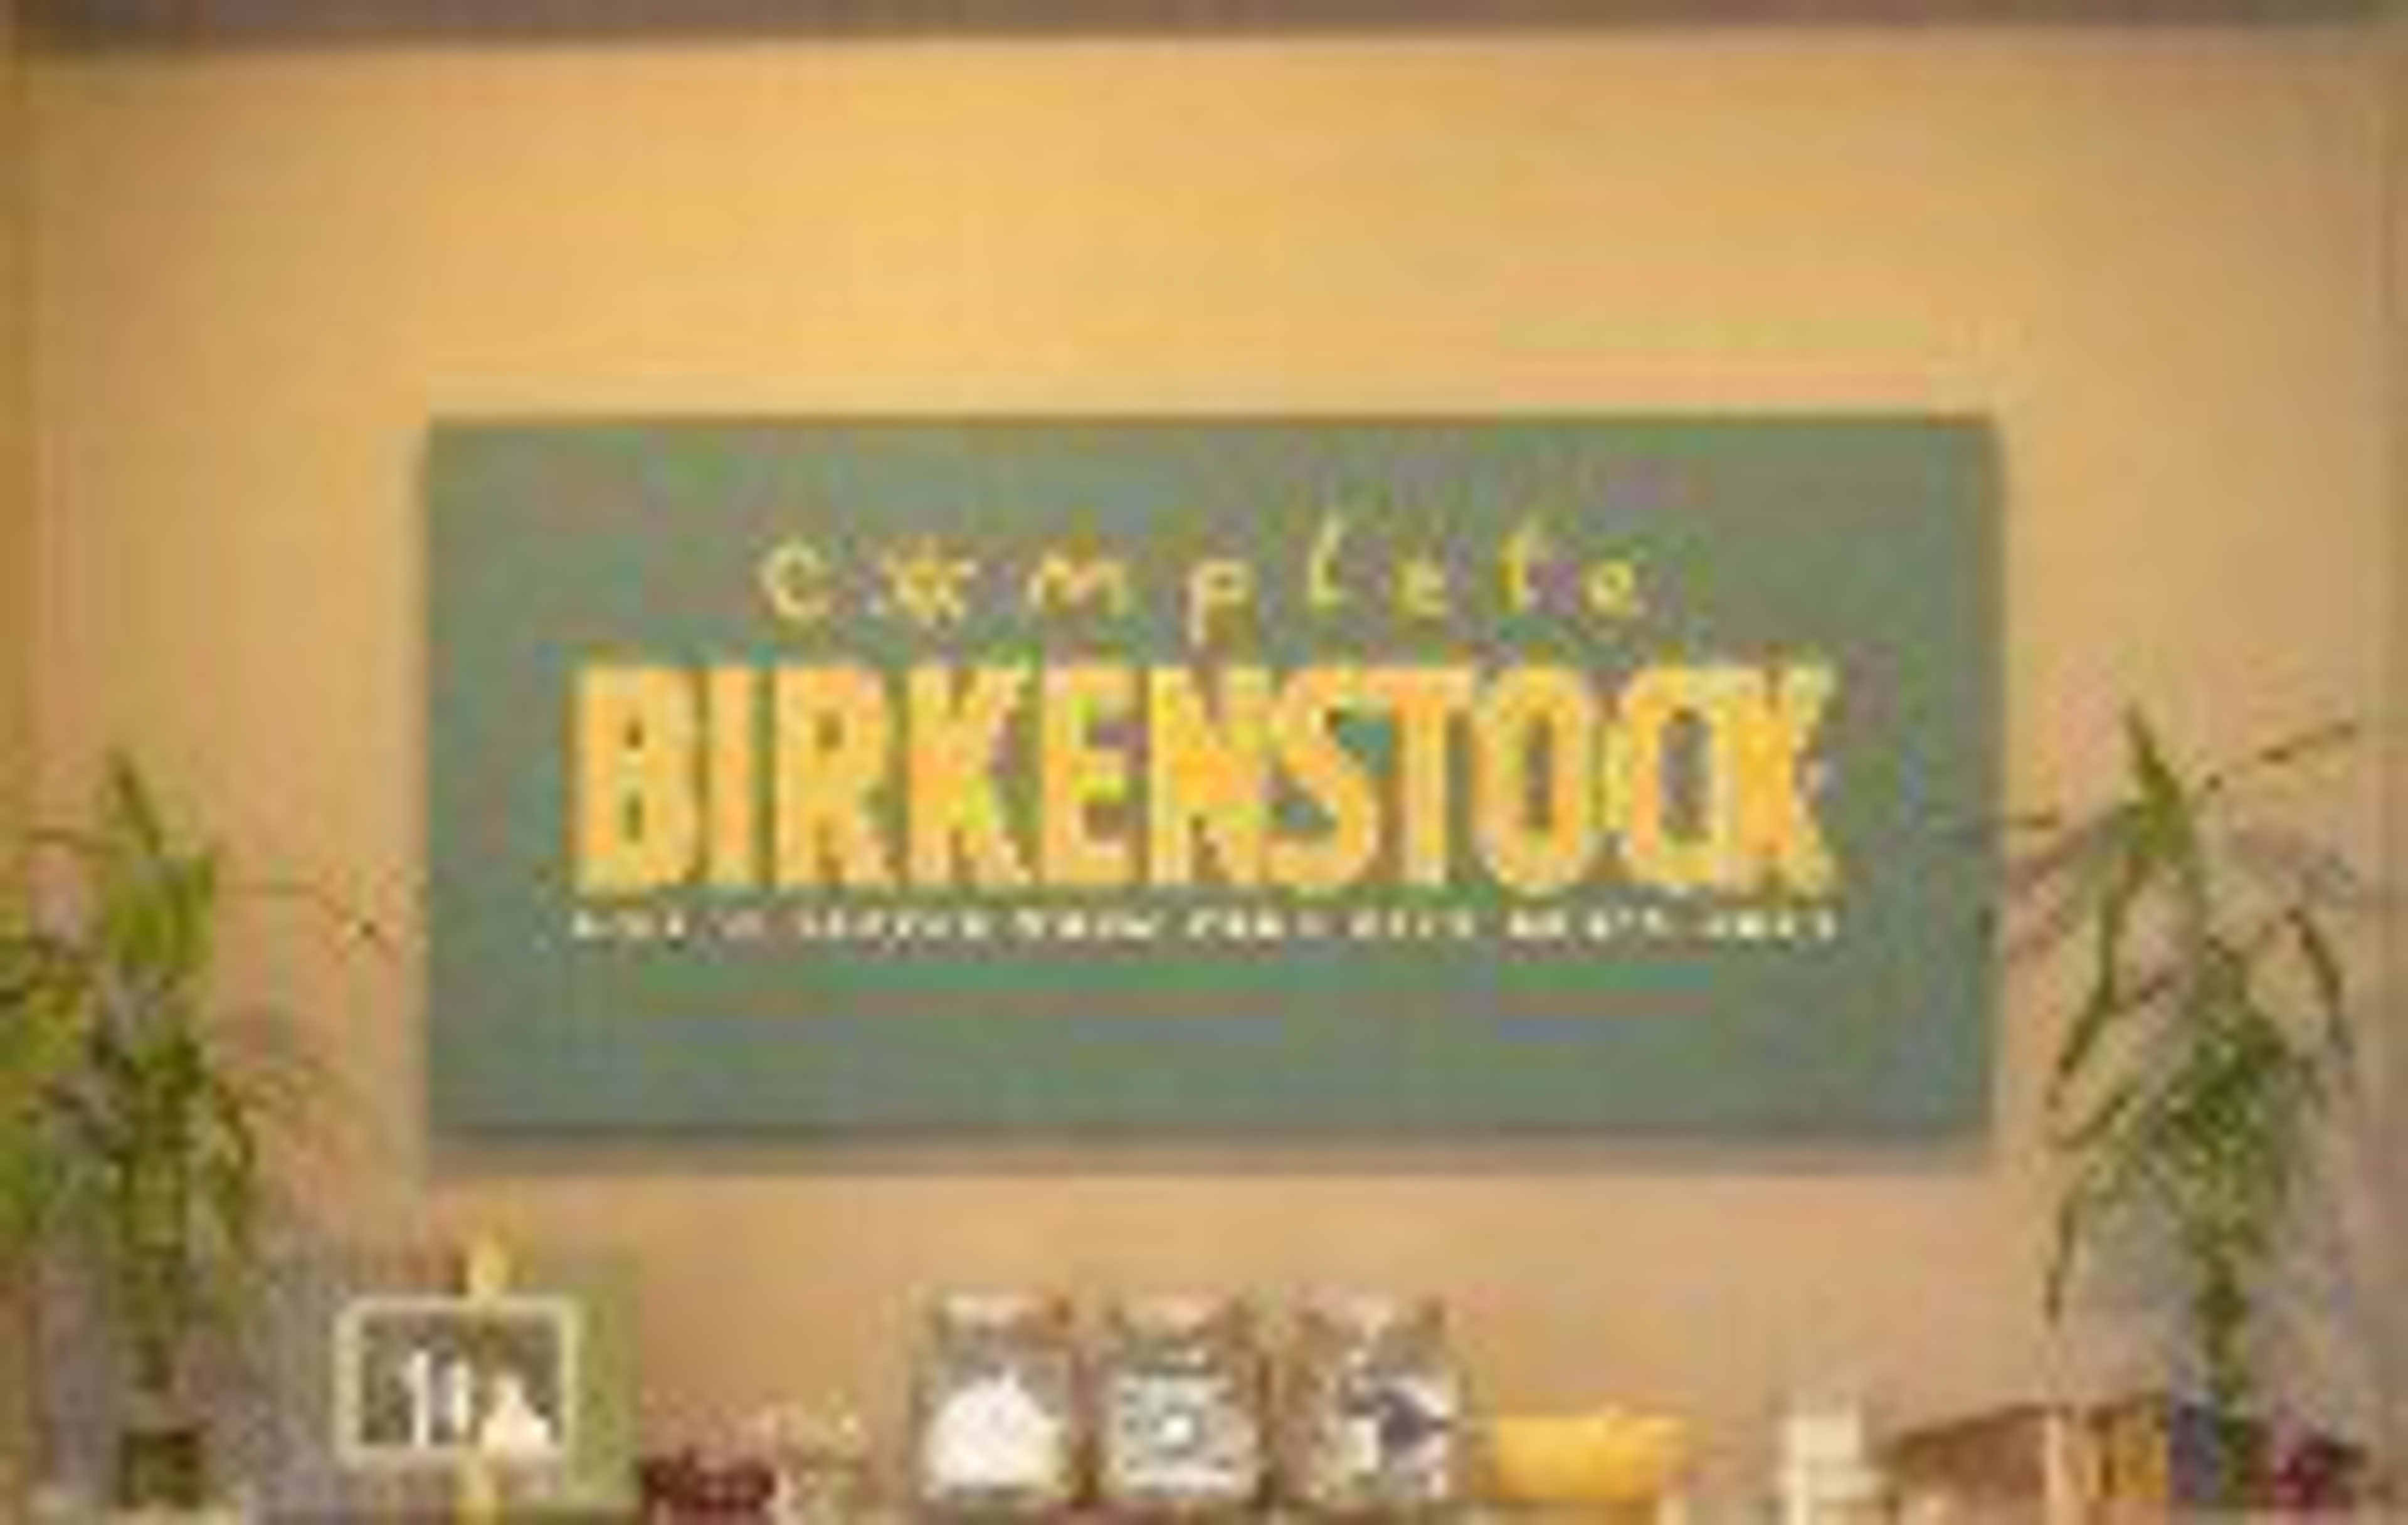 Complete BirkenstockCode